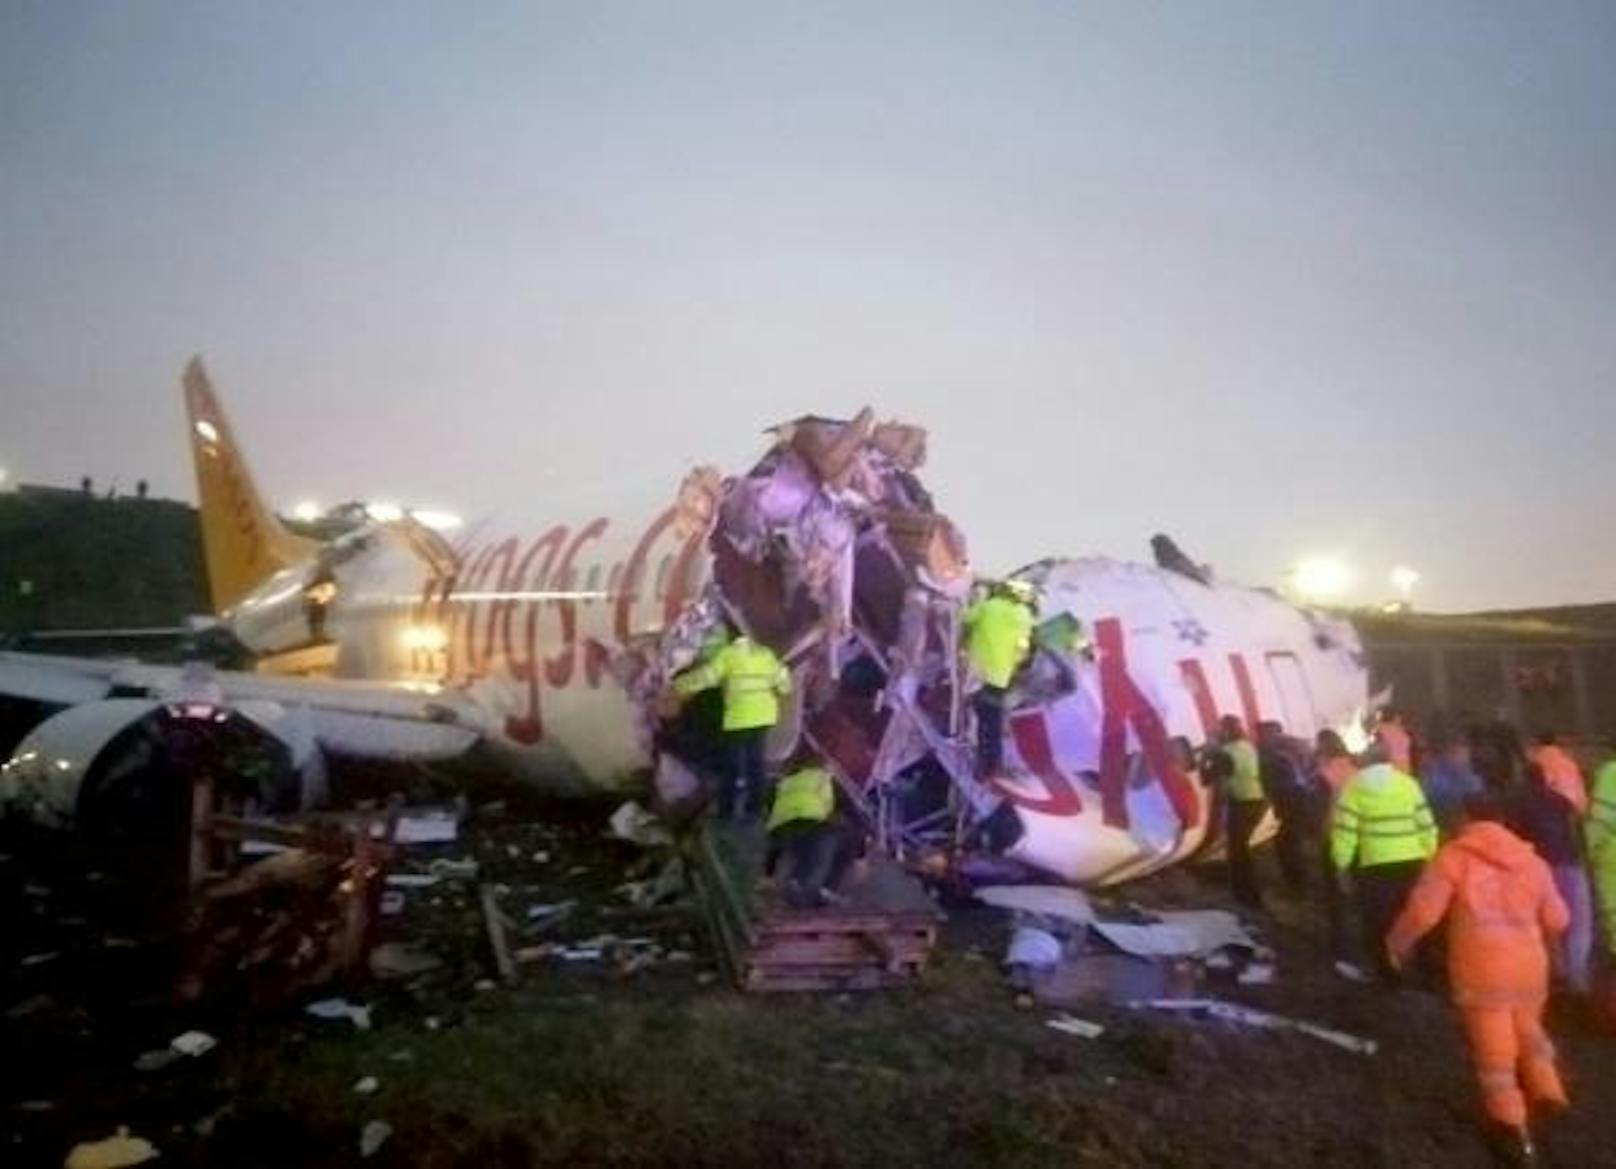 Beim Landeanflug auf den Istanbuler Flughafen Sabiha Gökcen ist ein Flugzeug von der Landebahn abgekommen.